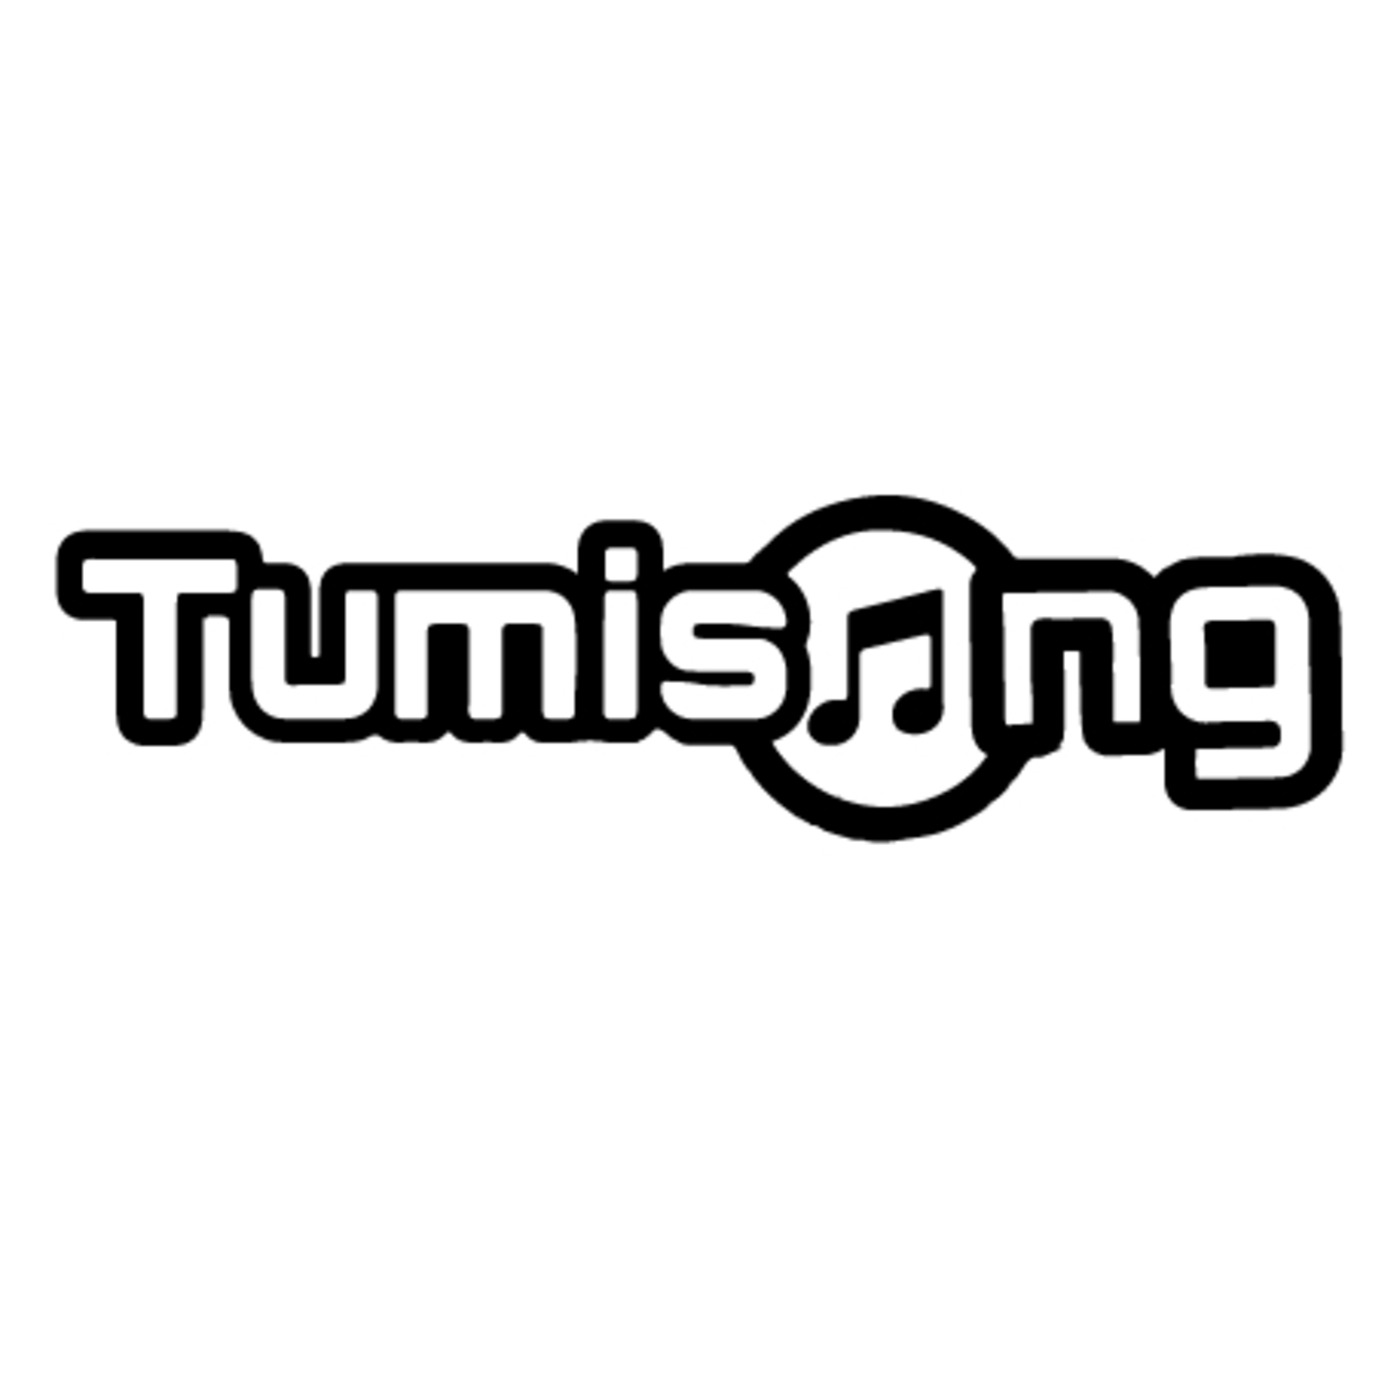 Tumisong - I Play What I Like